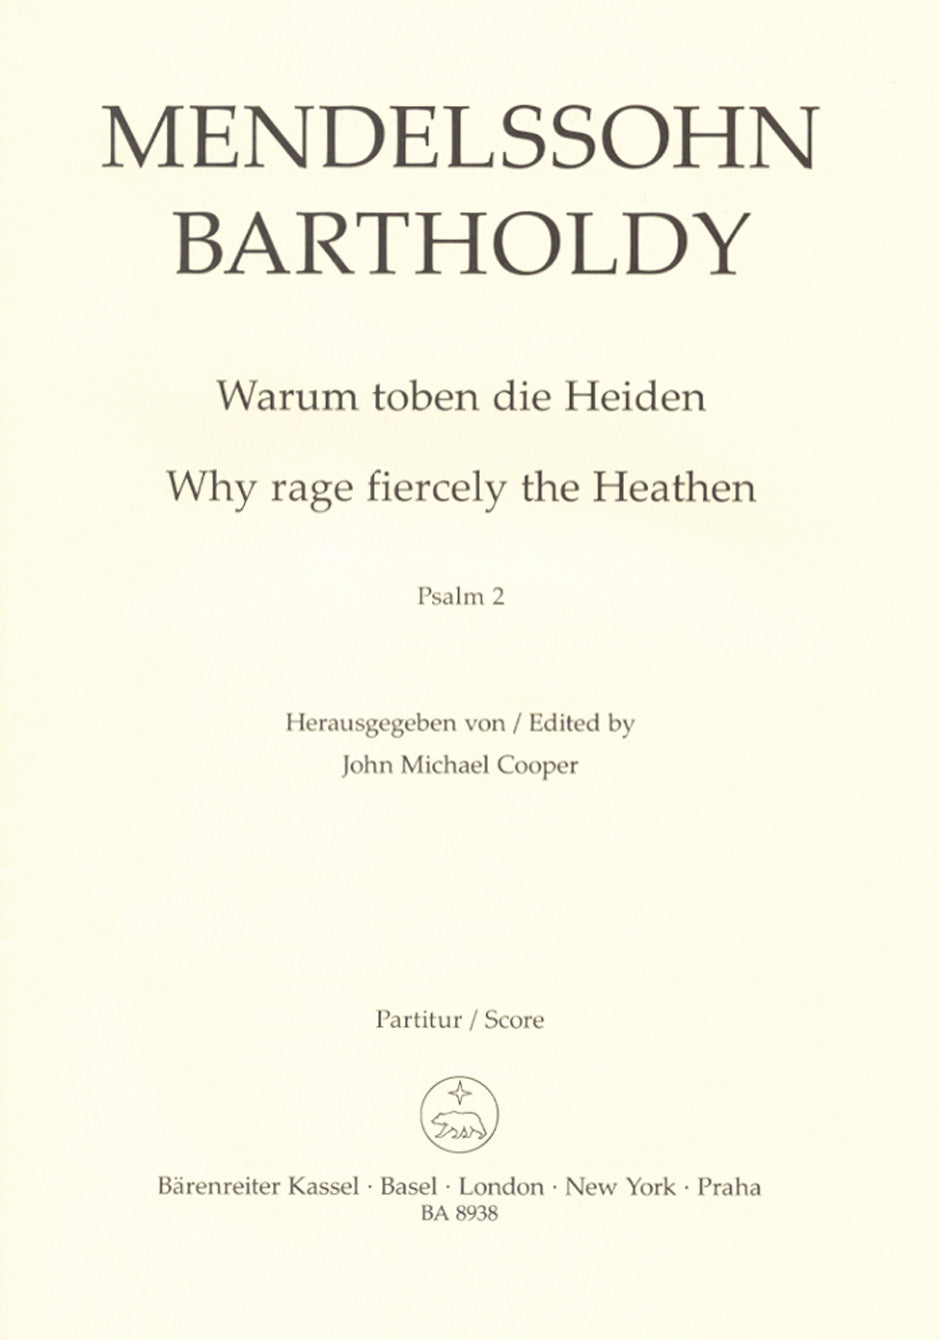 Mendelssohn Why rage fiercely the Heathen op. 78 (Psalm No. 2)